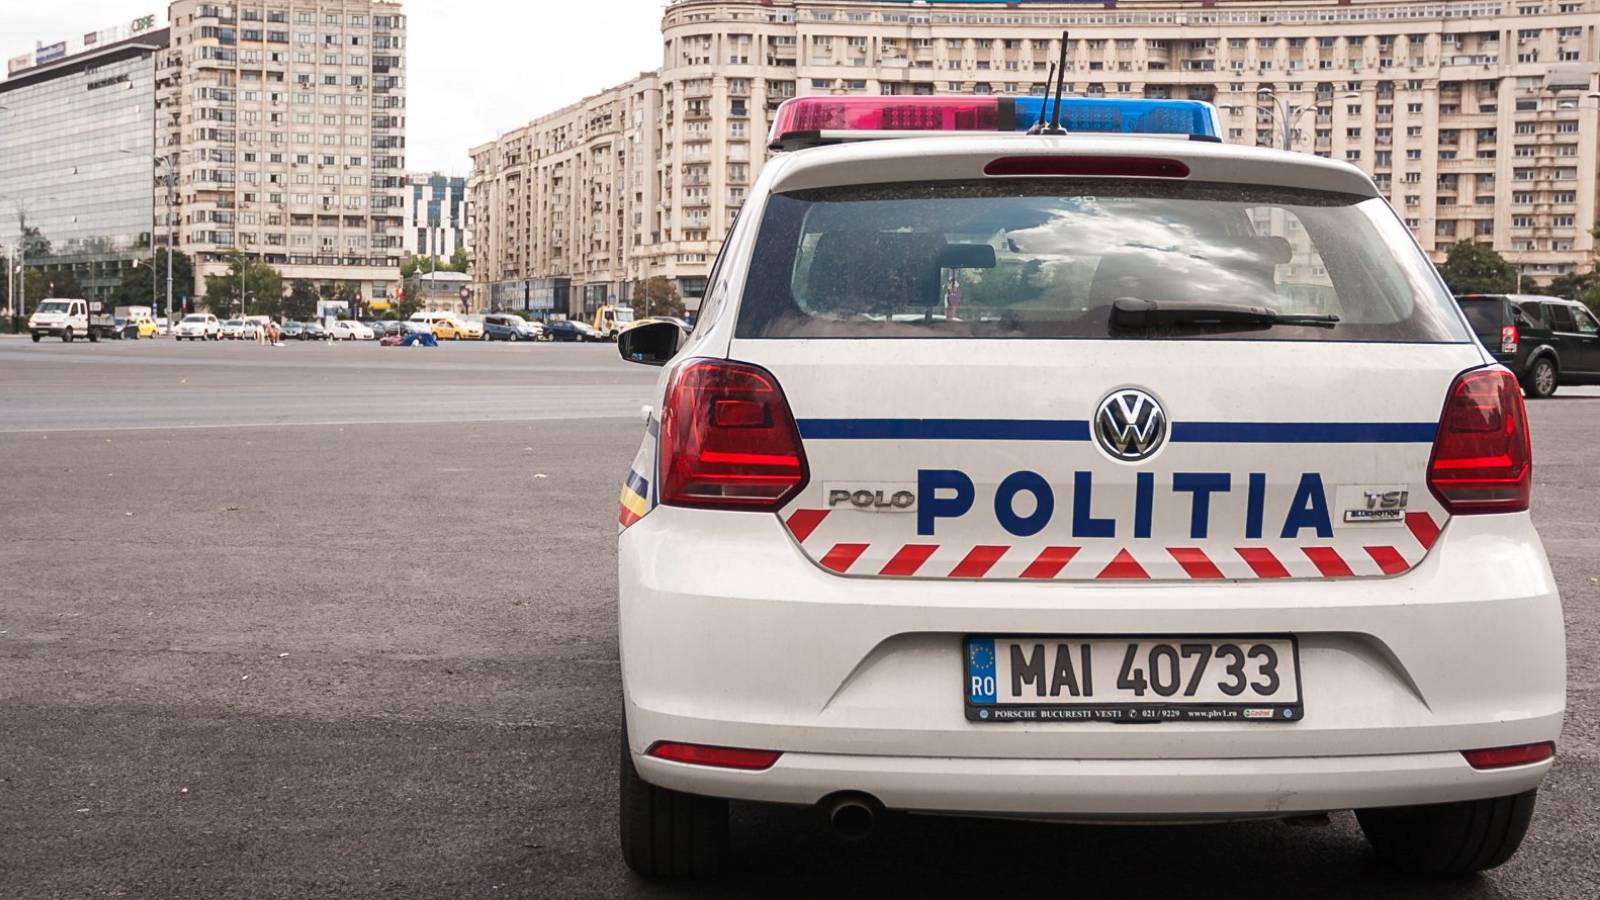 Información cámaras de vídeo de la policía rumana